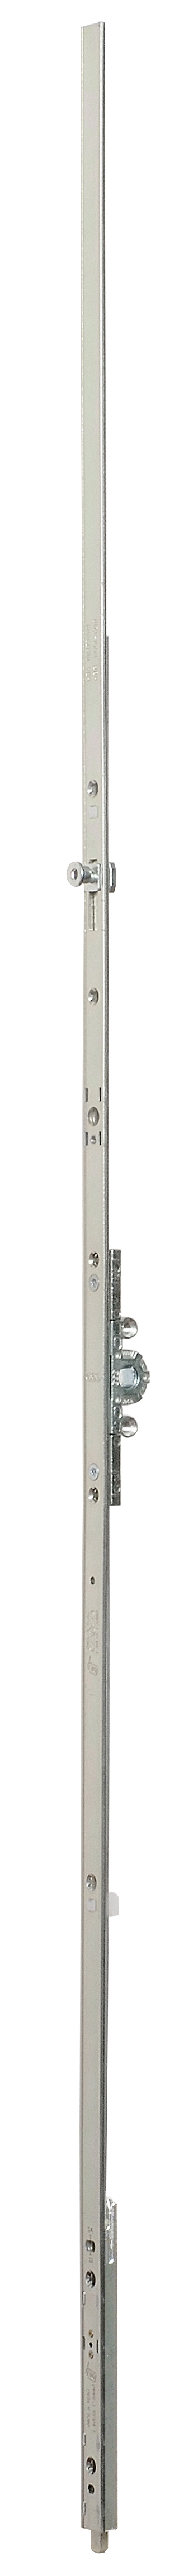 AGB -  Cremonese ARTECH anta a bandiera altezza maniglia fissa con puntale chiusura ad espansione per seconda anta - gr / dim. 04 - entrata 15 - alt. man. 500 - lbb/hbb 994 - 1210